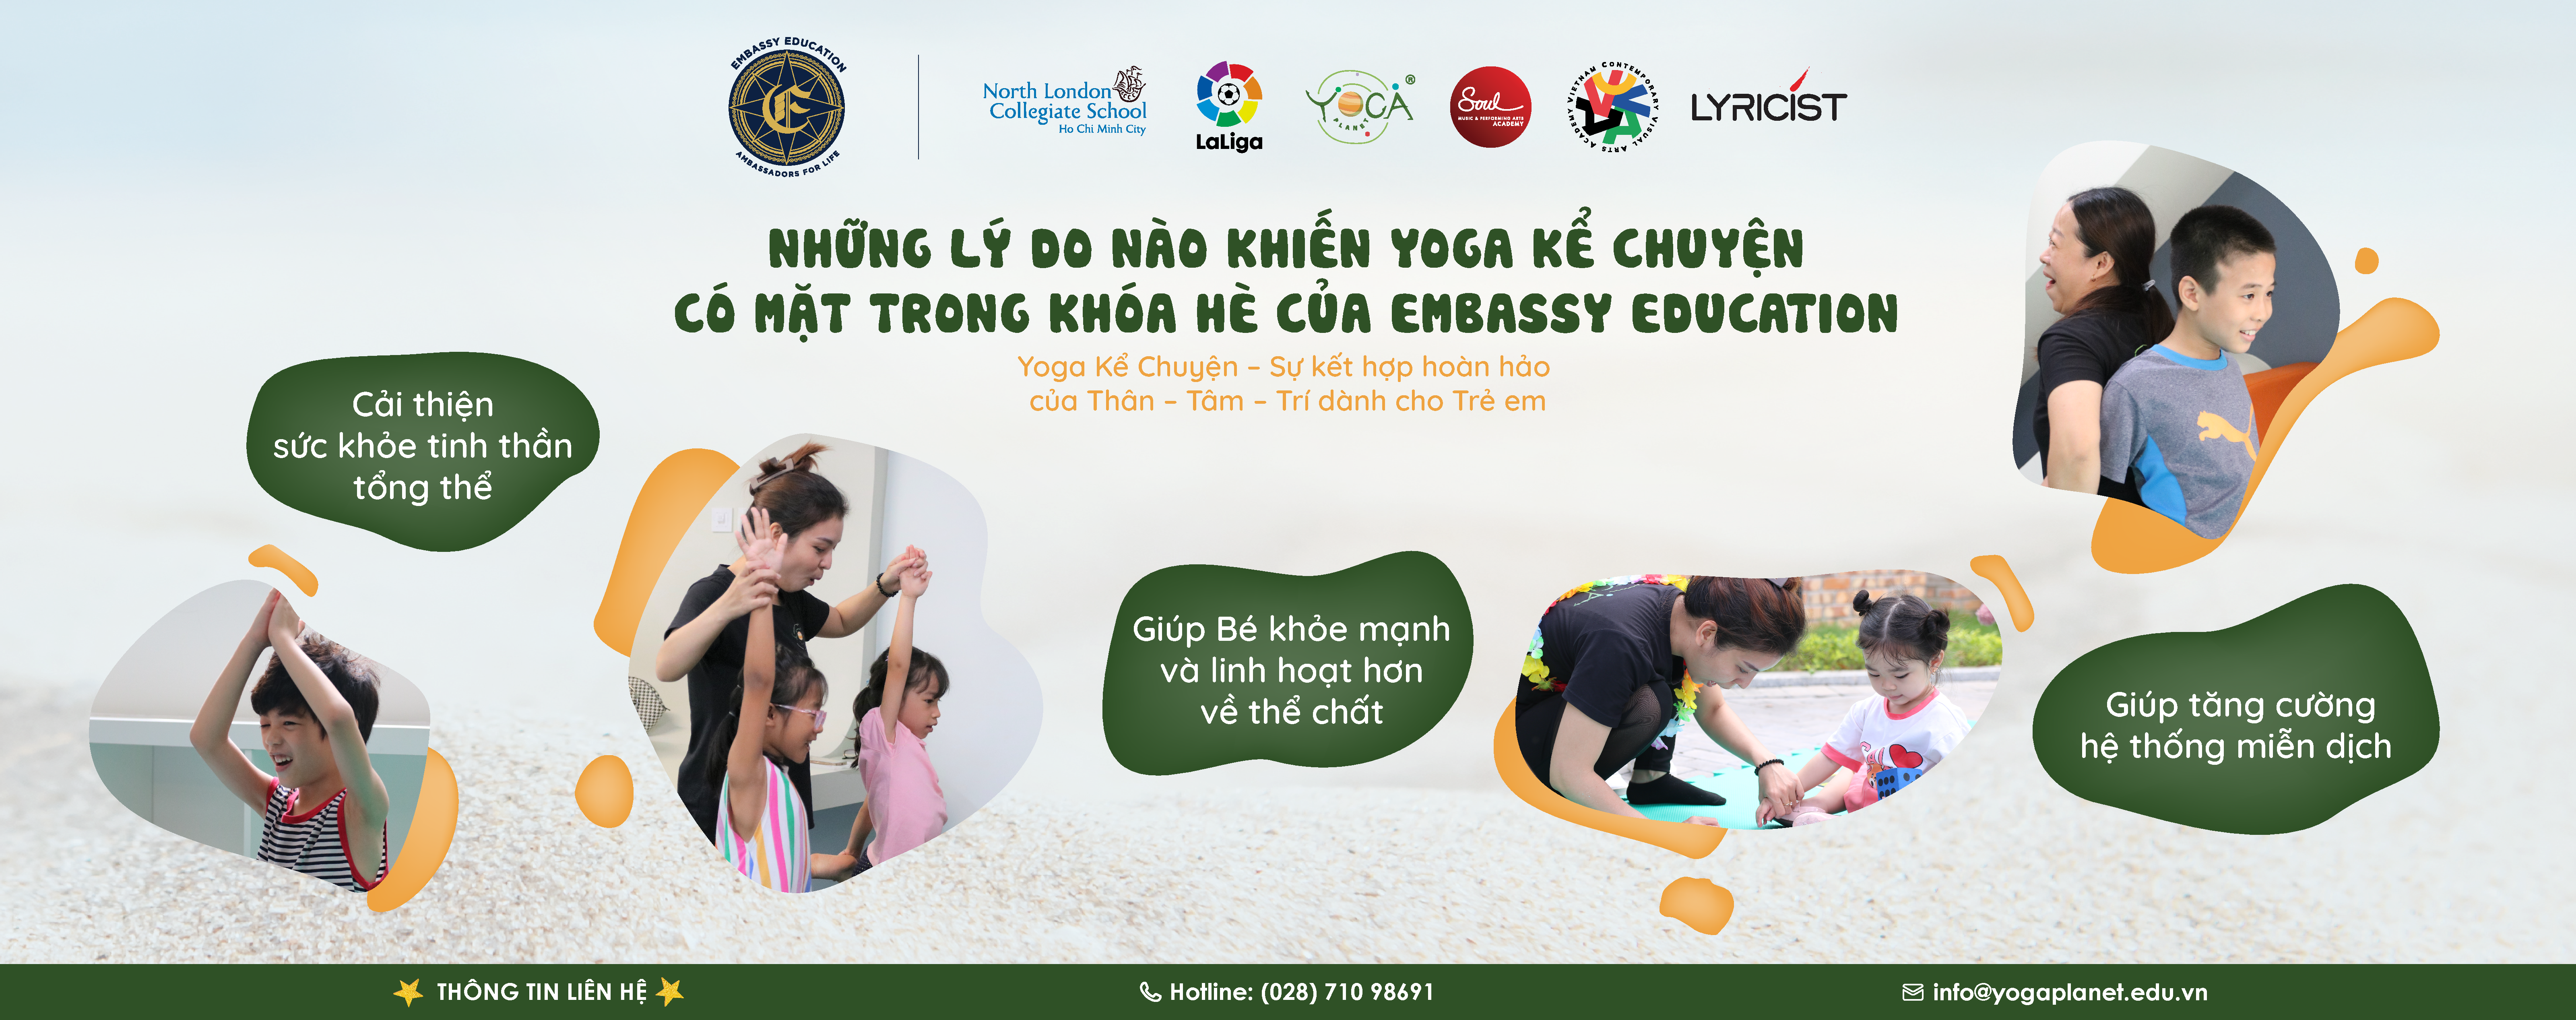 Chào mừng Yoga Kể Chuyện tại Embassy Education